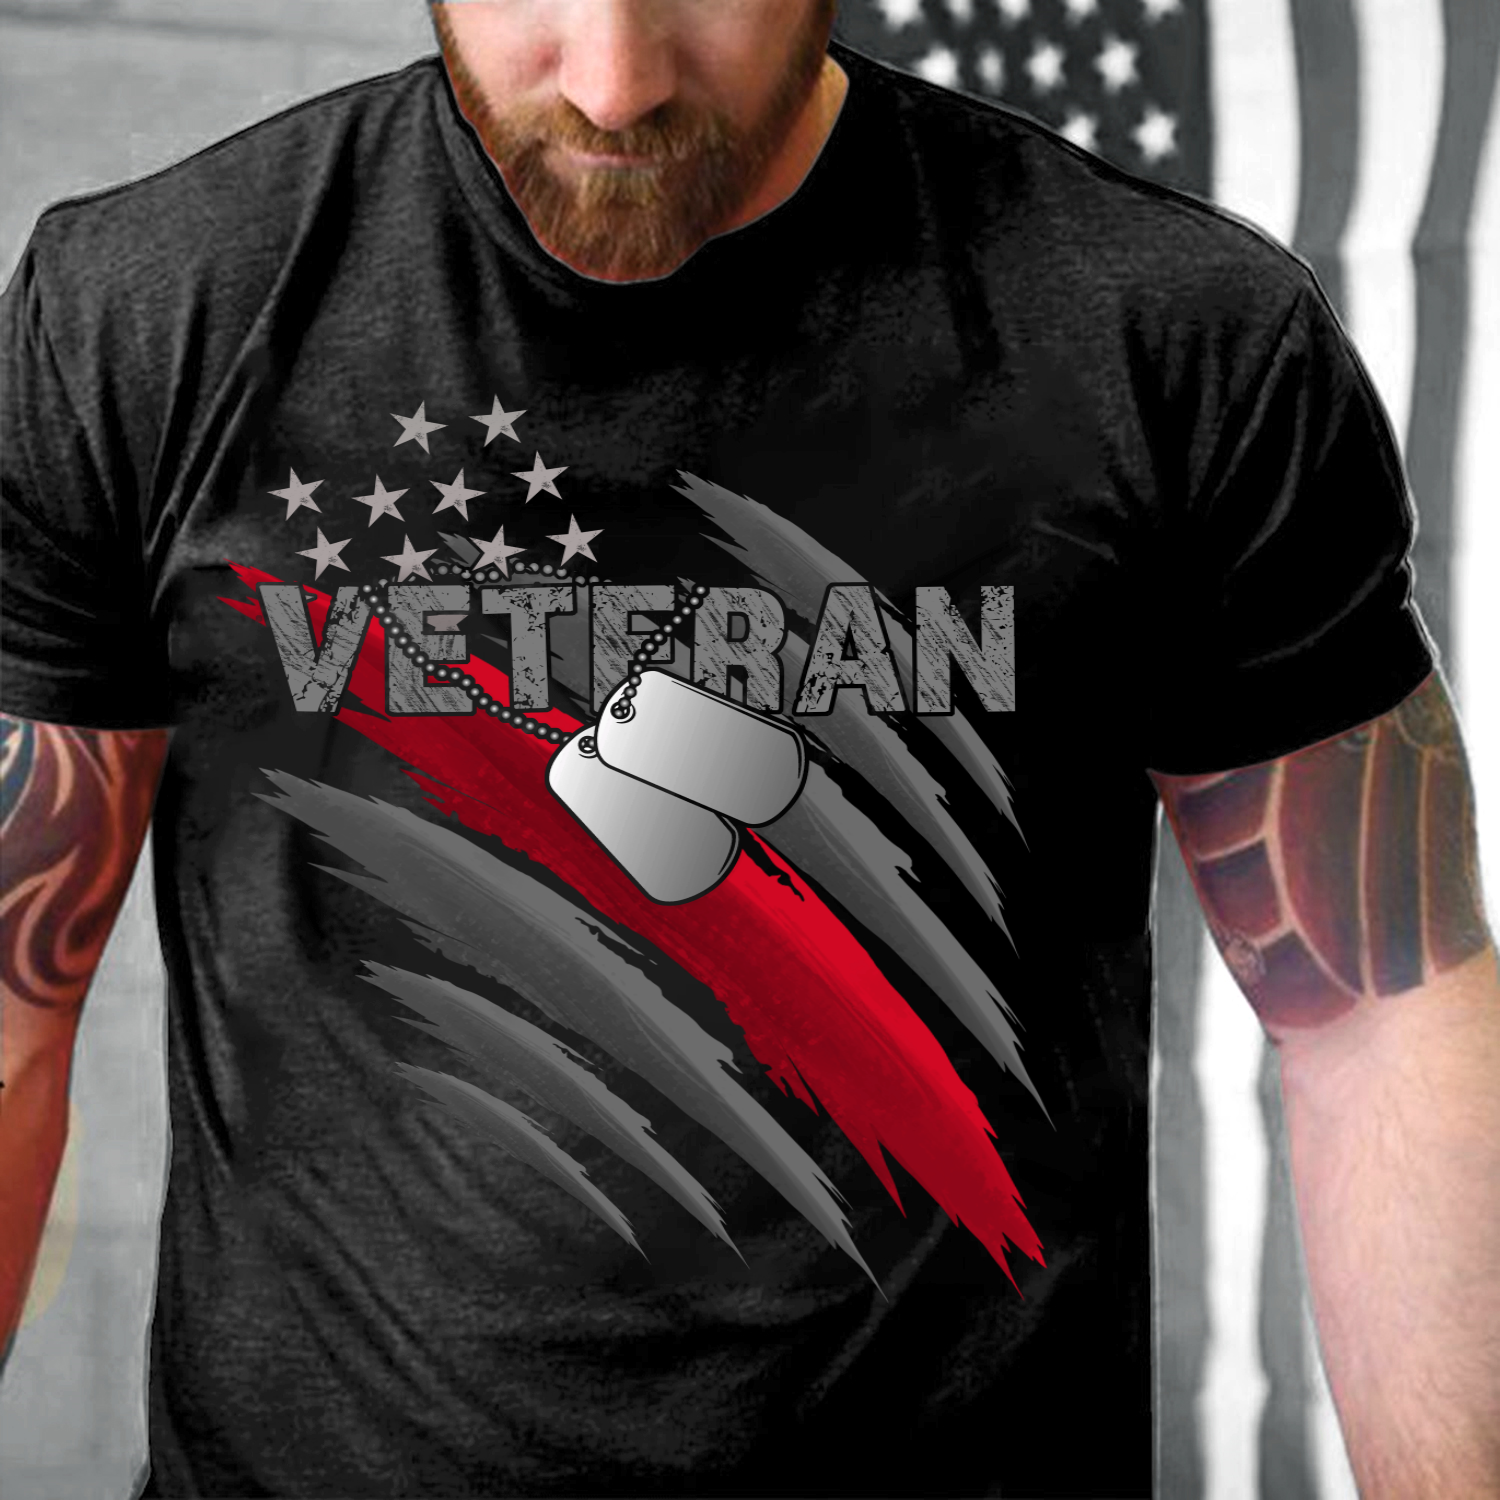 Proud U.S. Veteran, Gift For Veteran shirt, Military Shirt